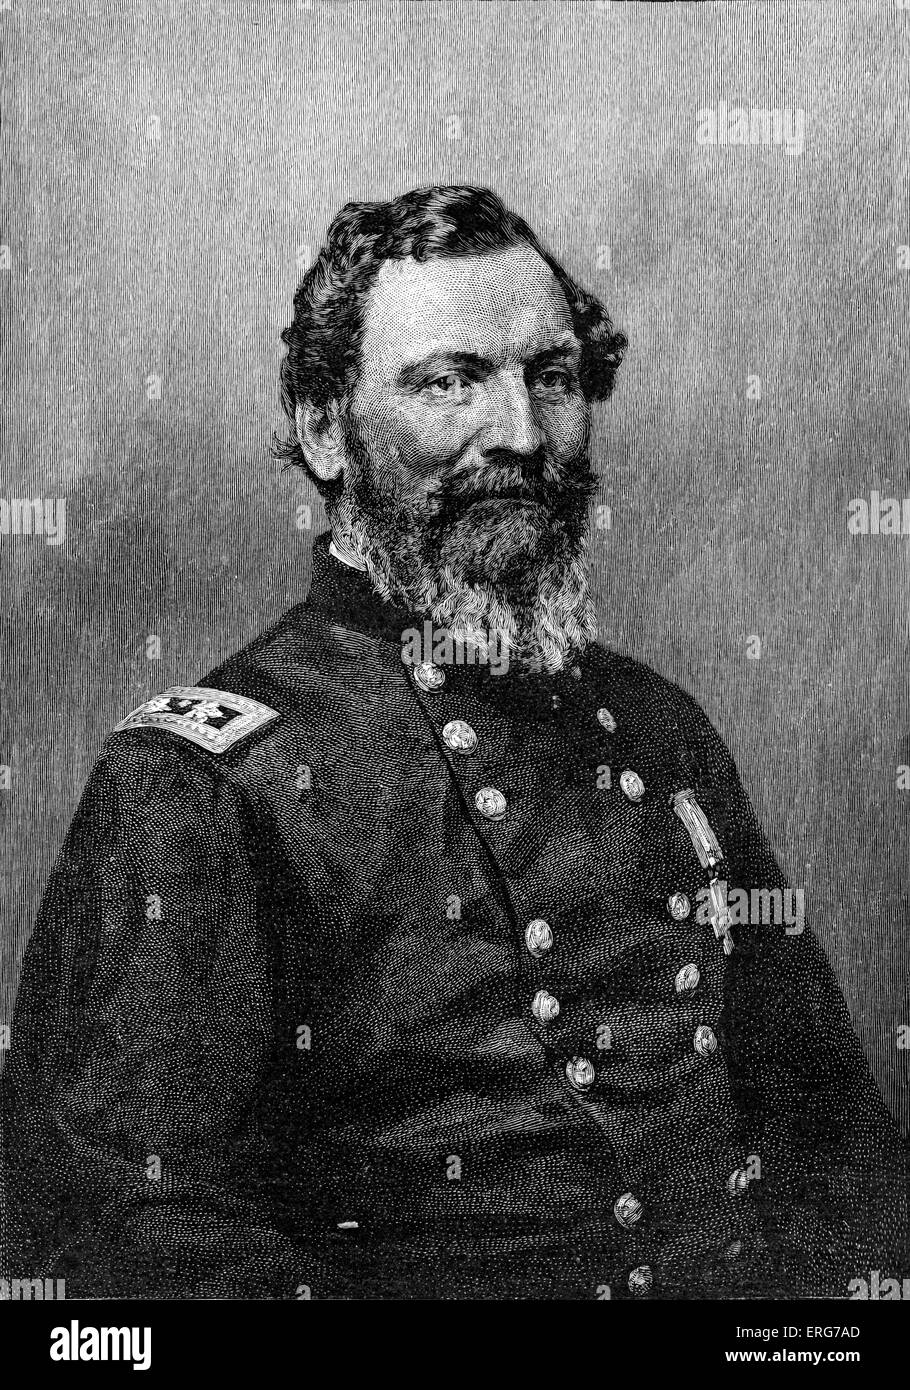 Le Major-général John Sedgwick, après une photo. Général de l'Armée de l'Union dans la guerre civile américaine, le 13 septembre, 1813 - 9 mai, 1864. Banque D'Images